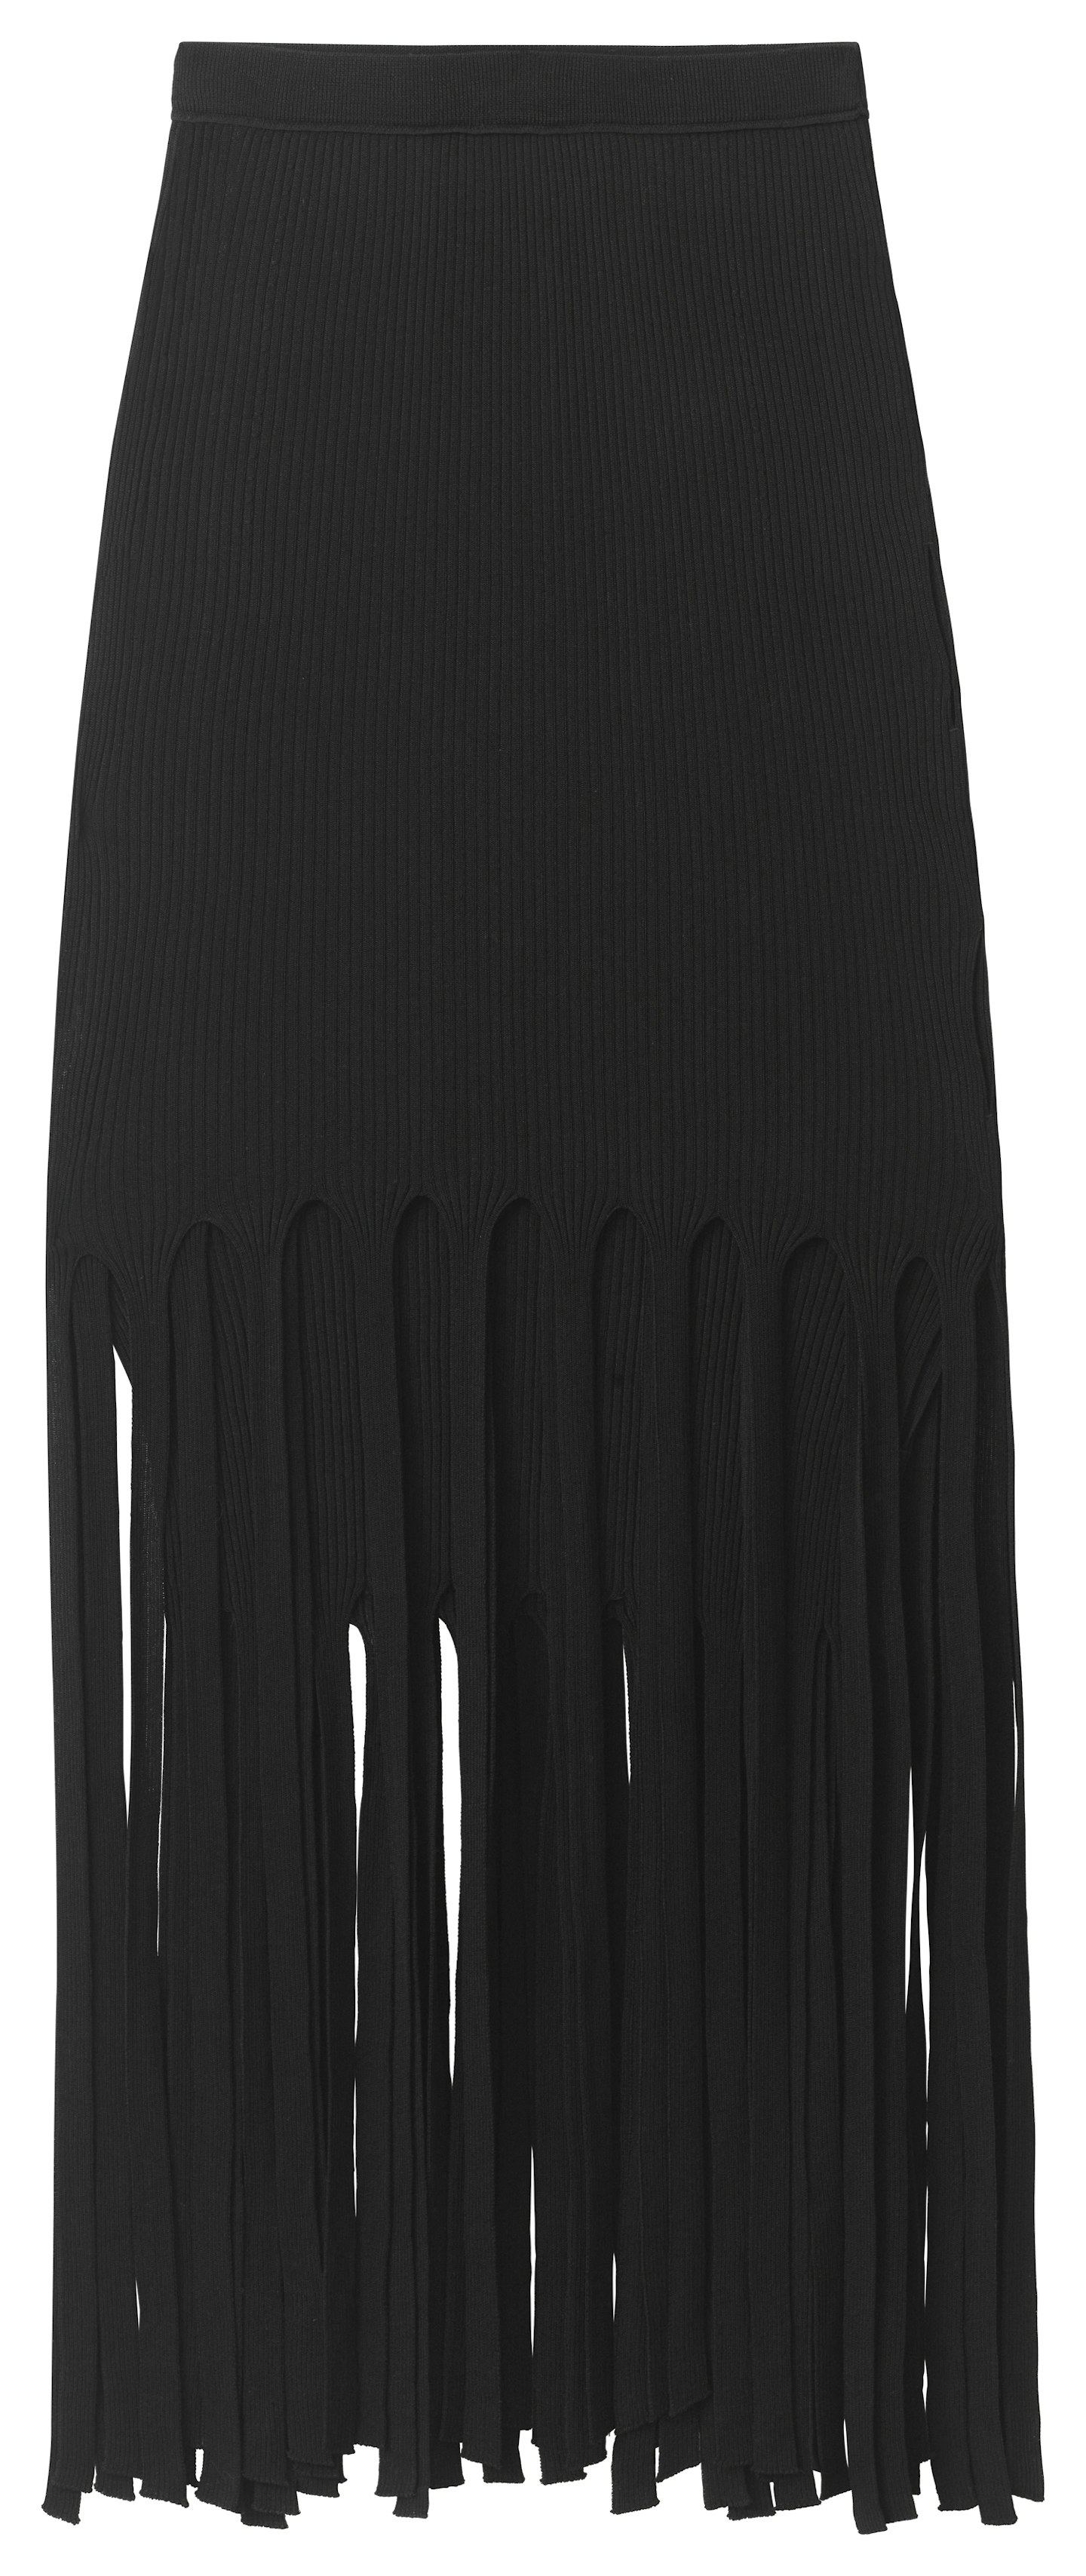 Fringed Skirt, £99.99